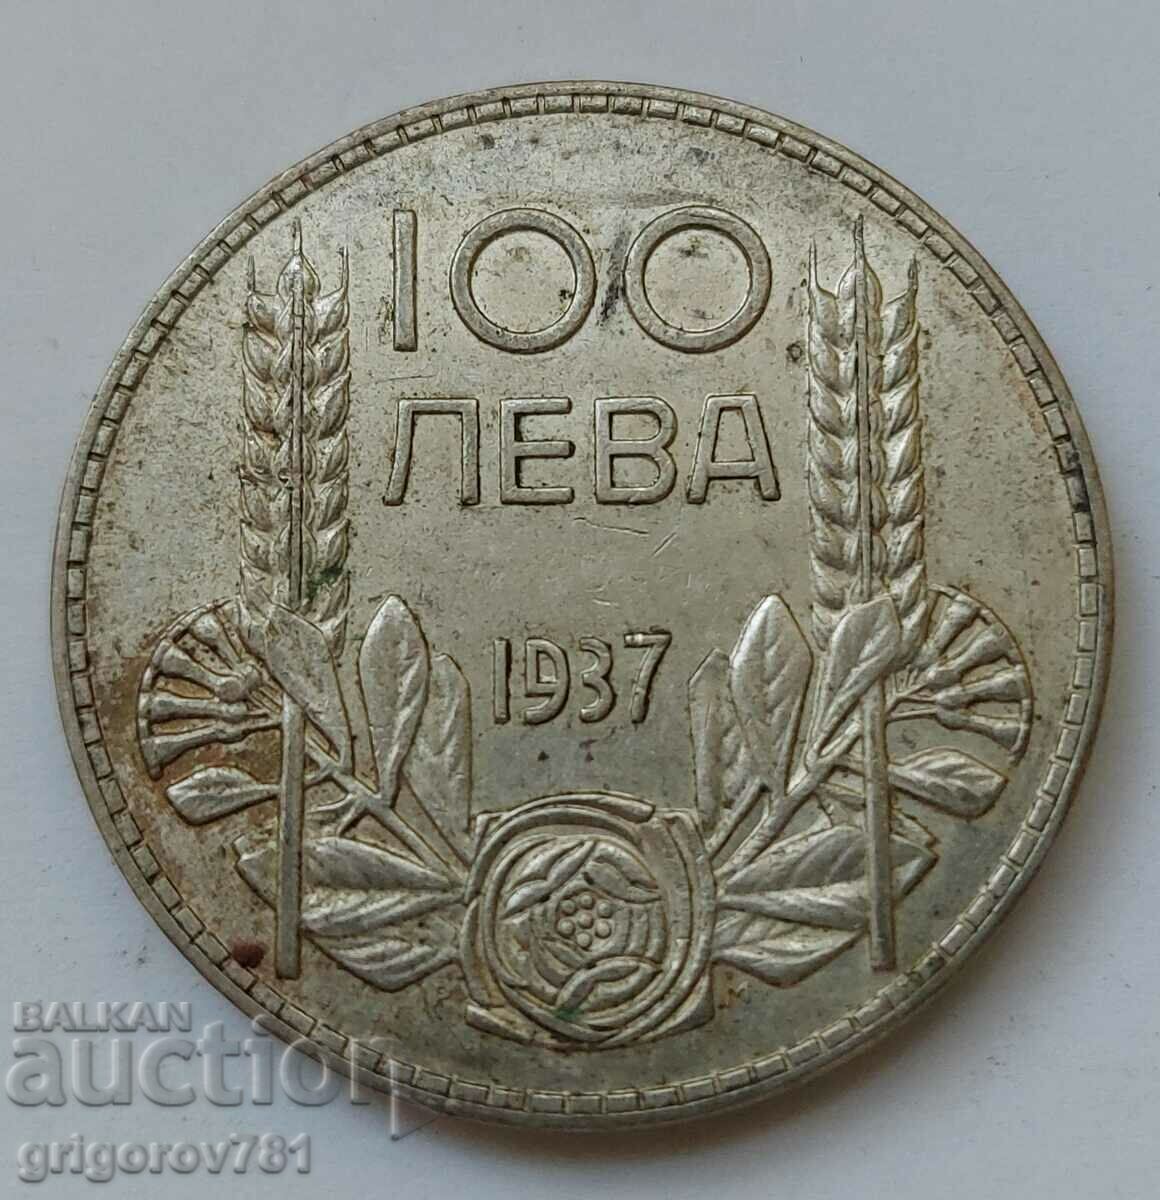 100 leva silver Bulgaria 1937 - silver coin #112